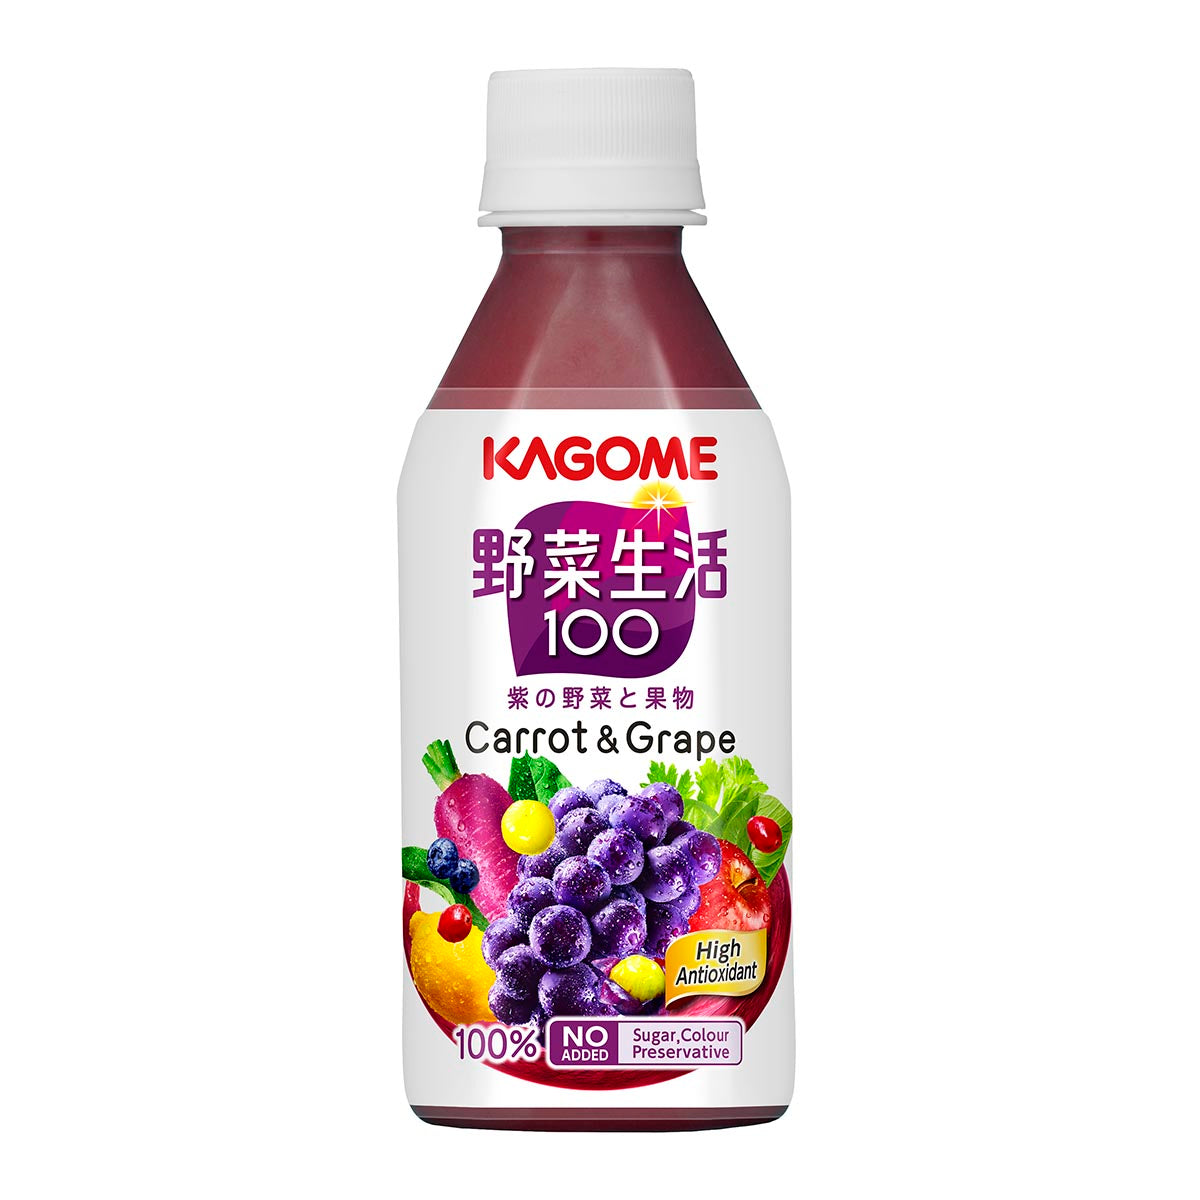 [原箱] KAGOME 野菜生活100 提子混合汁 24 x 280ml